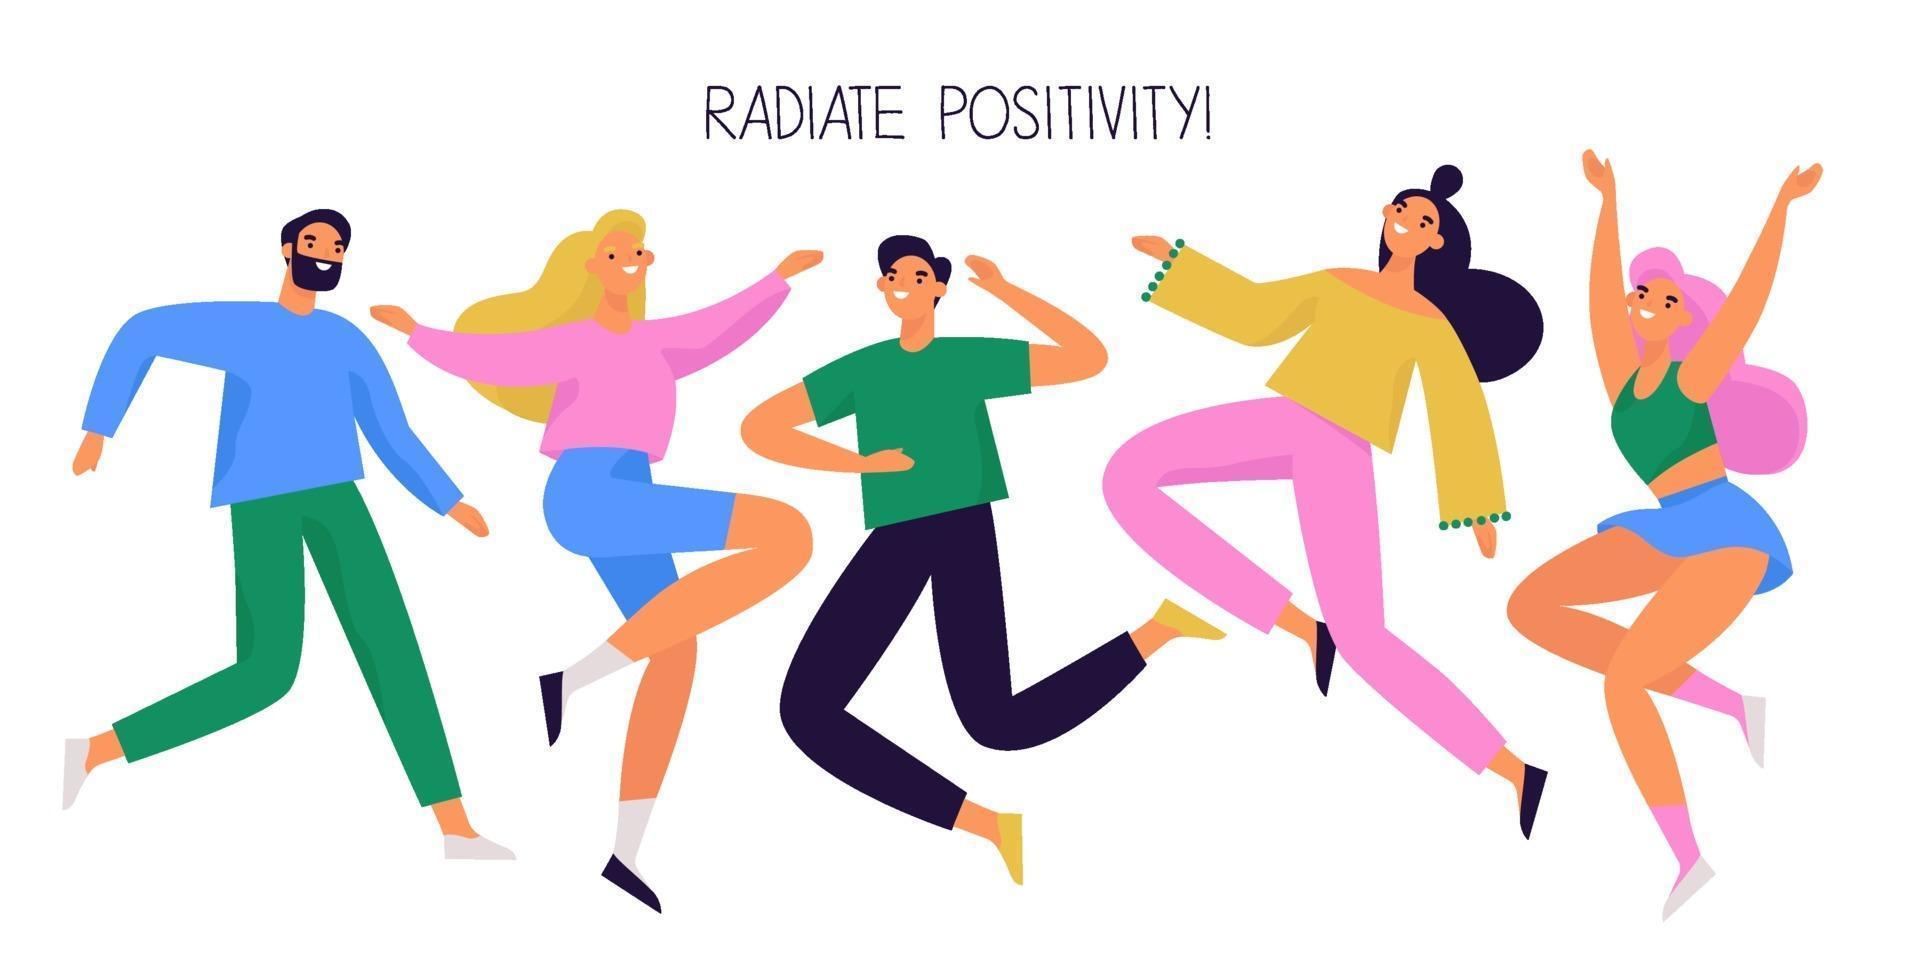 grupo de gente feliz saltando y bailando. Personajes diversos alegres y positivos. ilustración vectorial colorida. vector